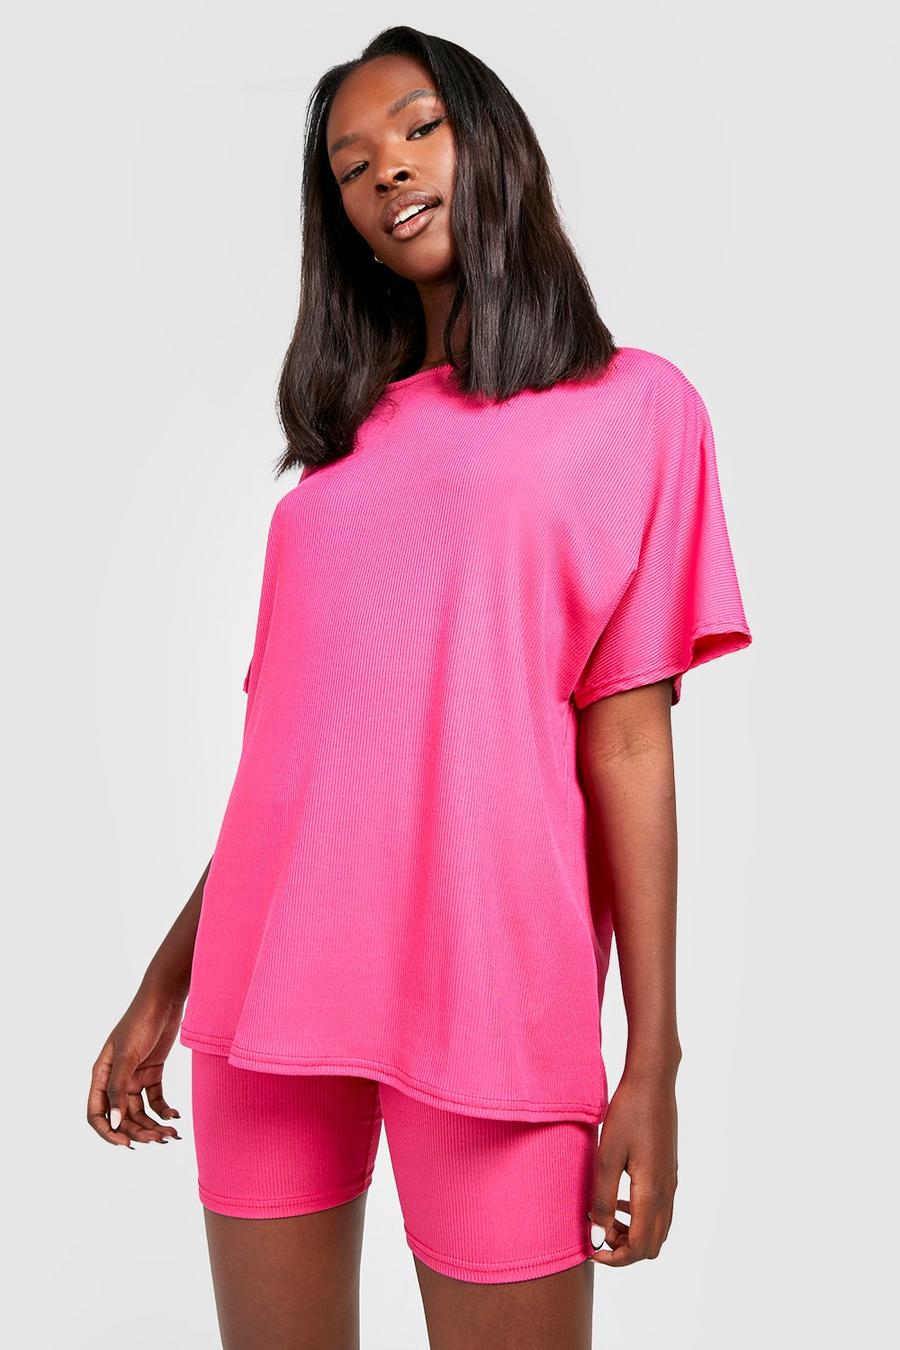 Ensemble avec t-shirt oversize et short cycliste, Hot pink rose